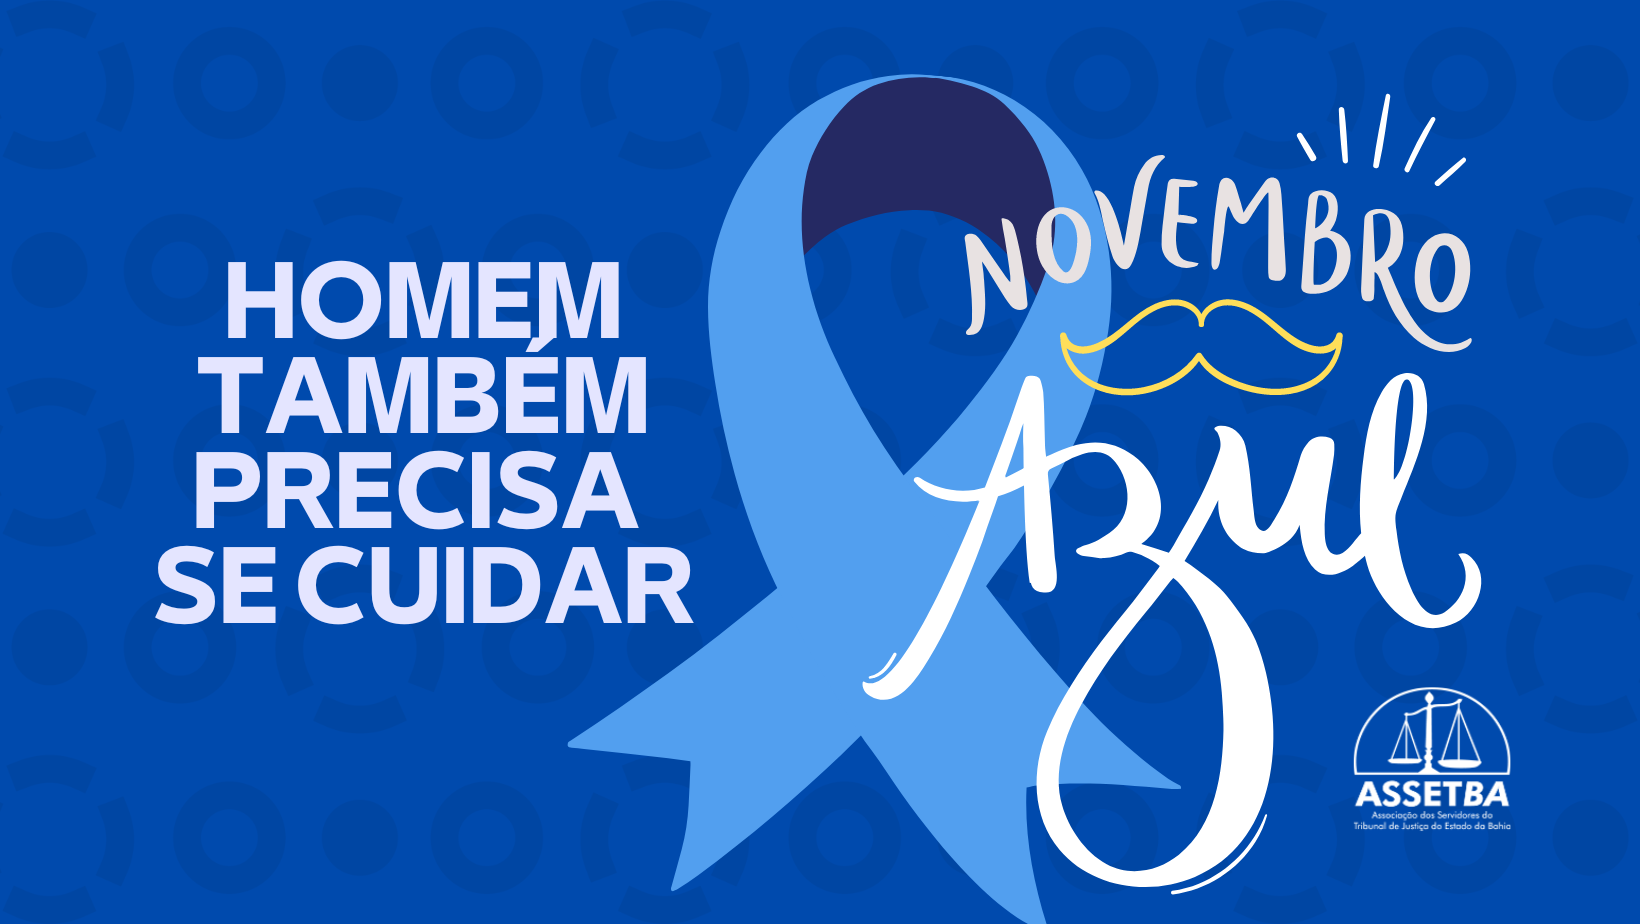 Novembro Azul, a Assetba apoia campanha de prevenção à saúde dos homens